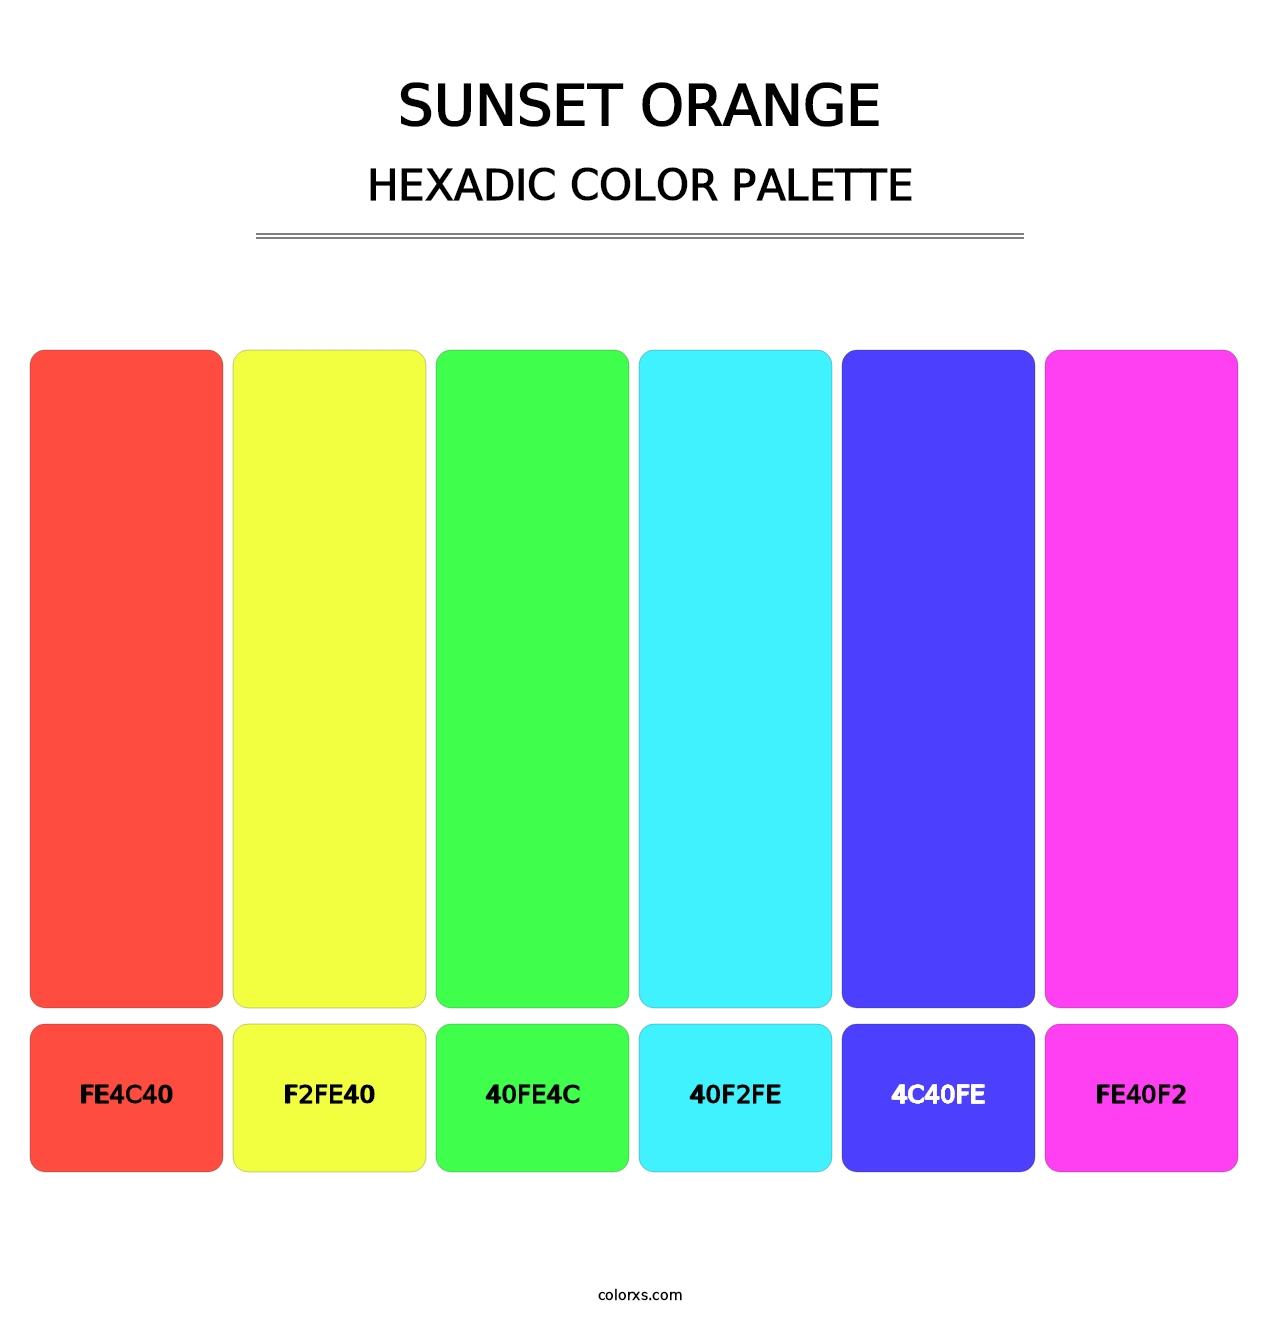 Sunset Orange - Hexadic Color Palette